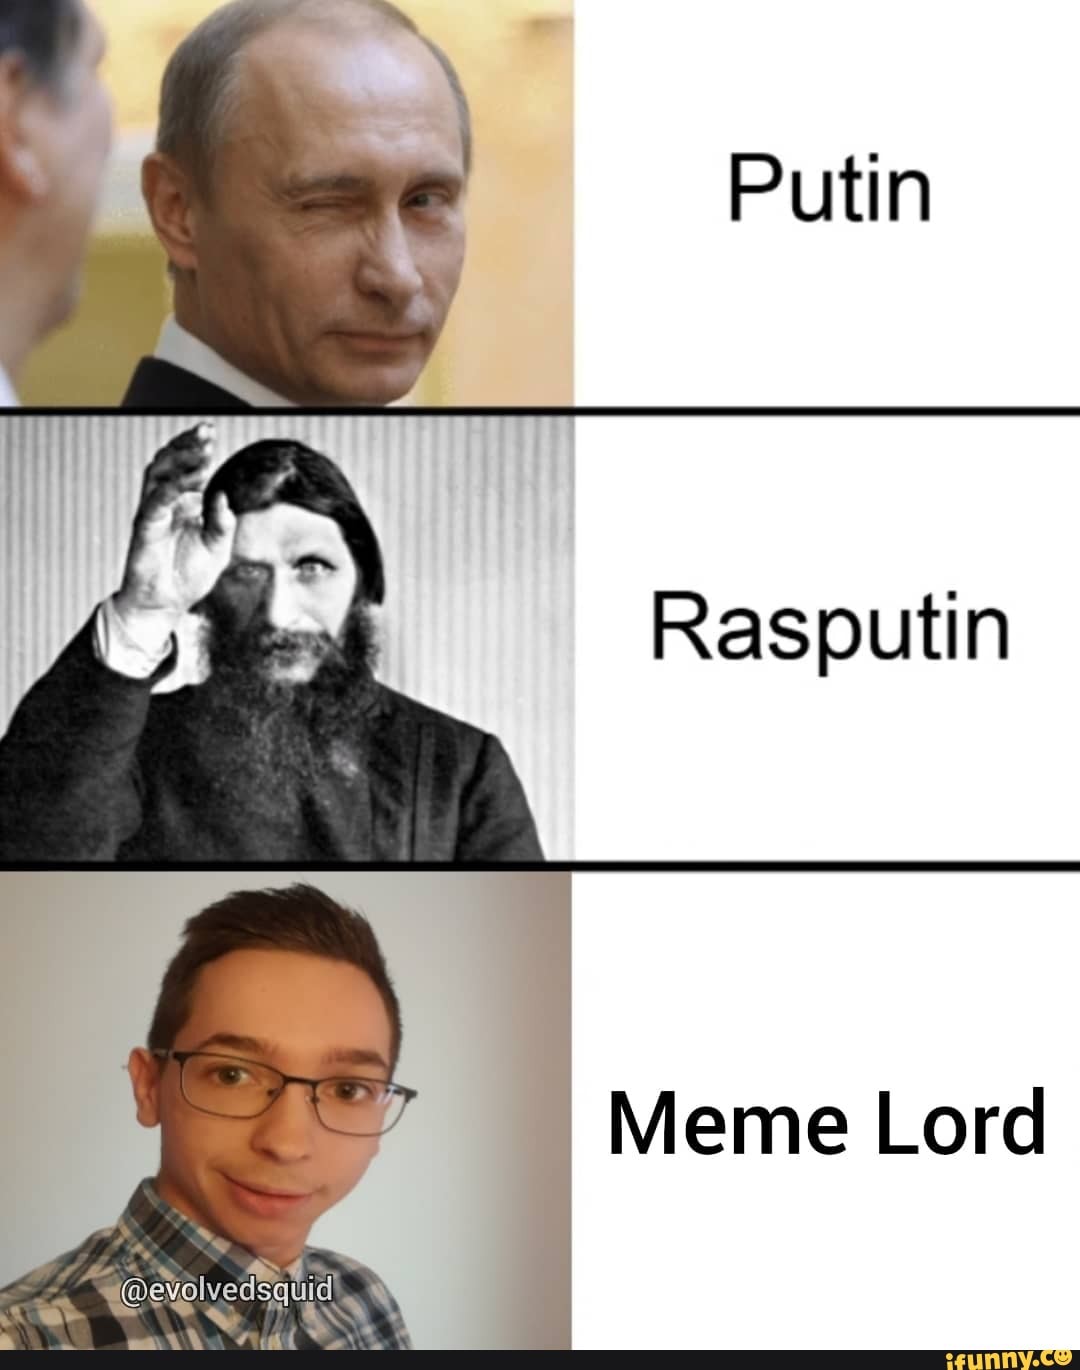 Putin Rasputin Meme Lord - iFunny